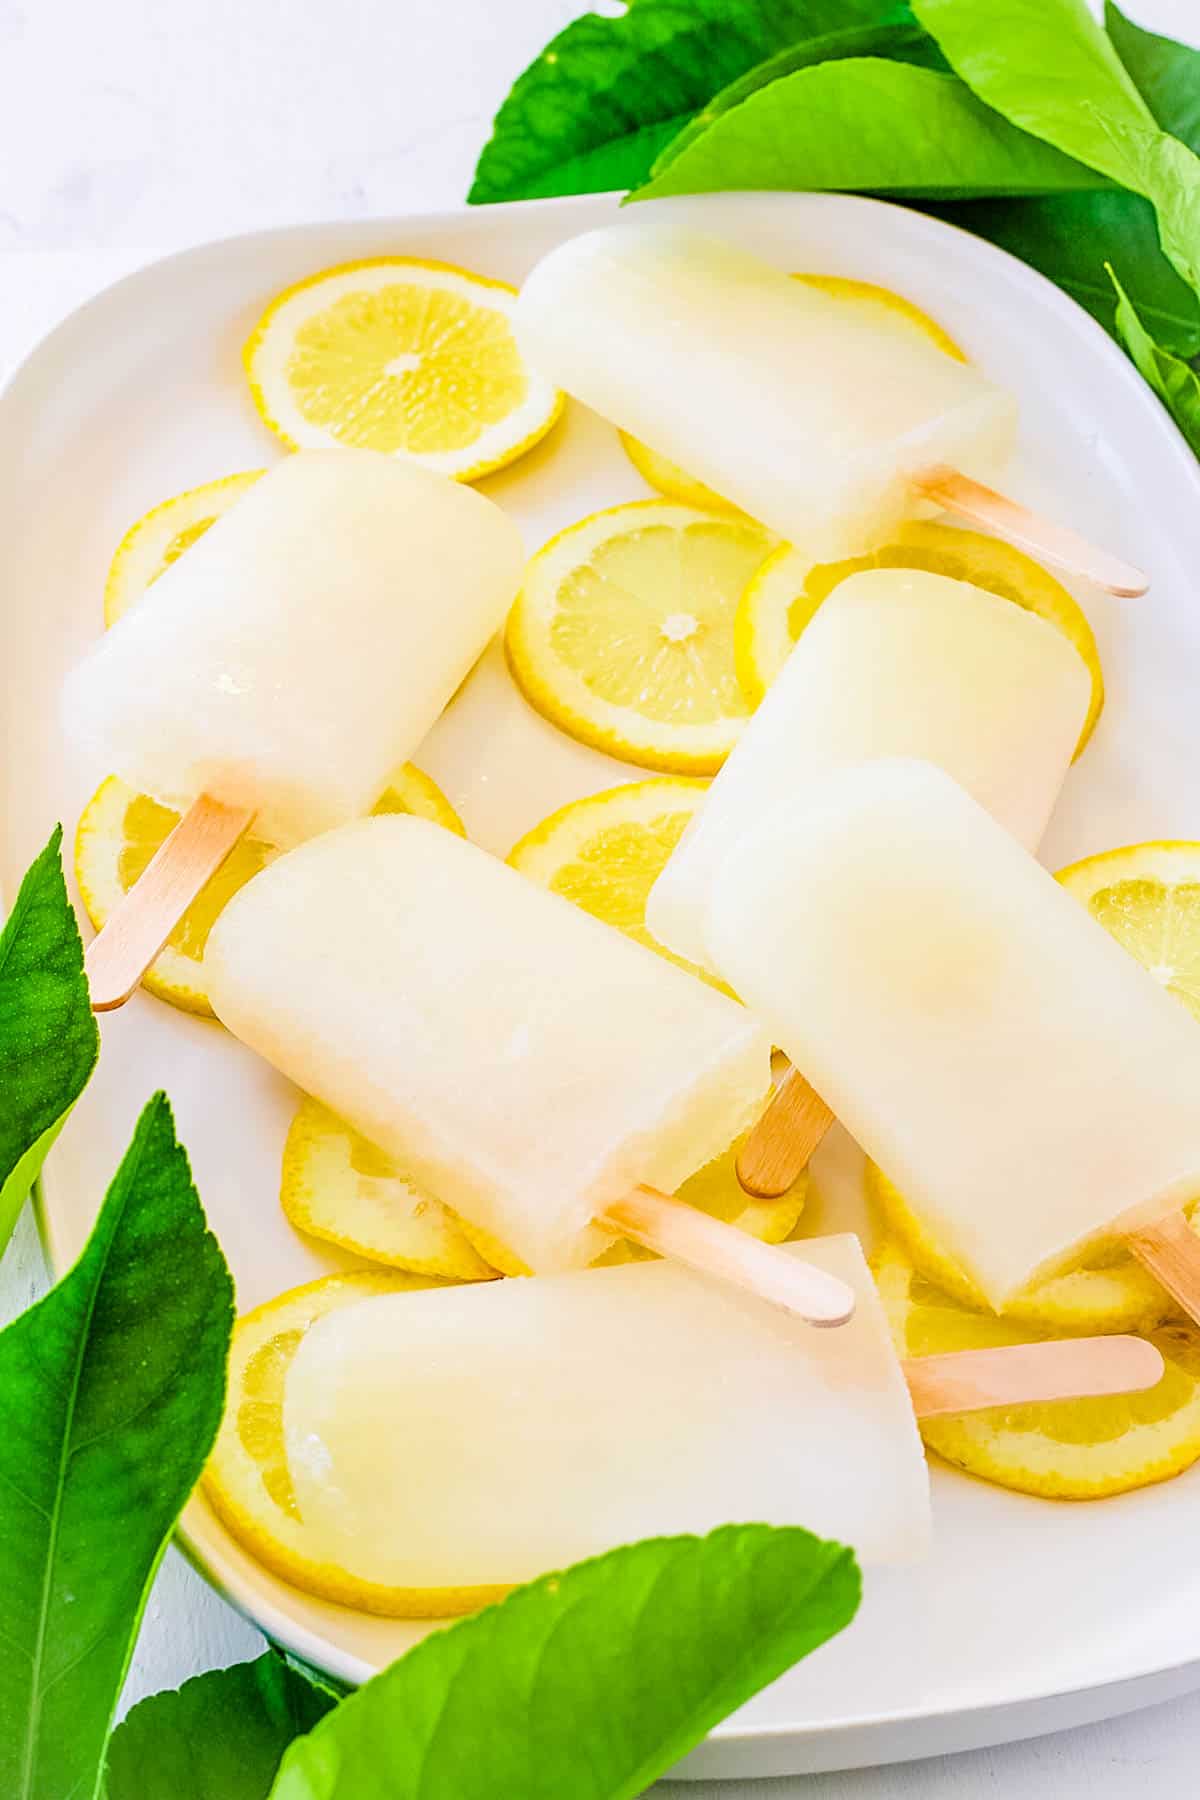 Sucettes glacées à la limonade maison sur un plateau blanc avec des tranches de citron comme garniture.